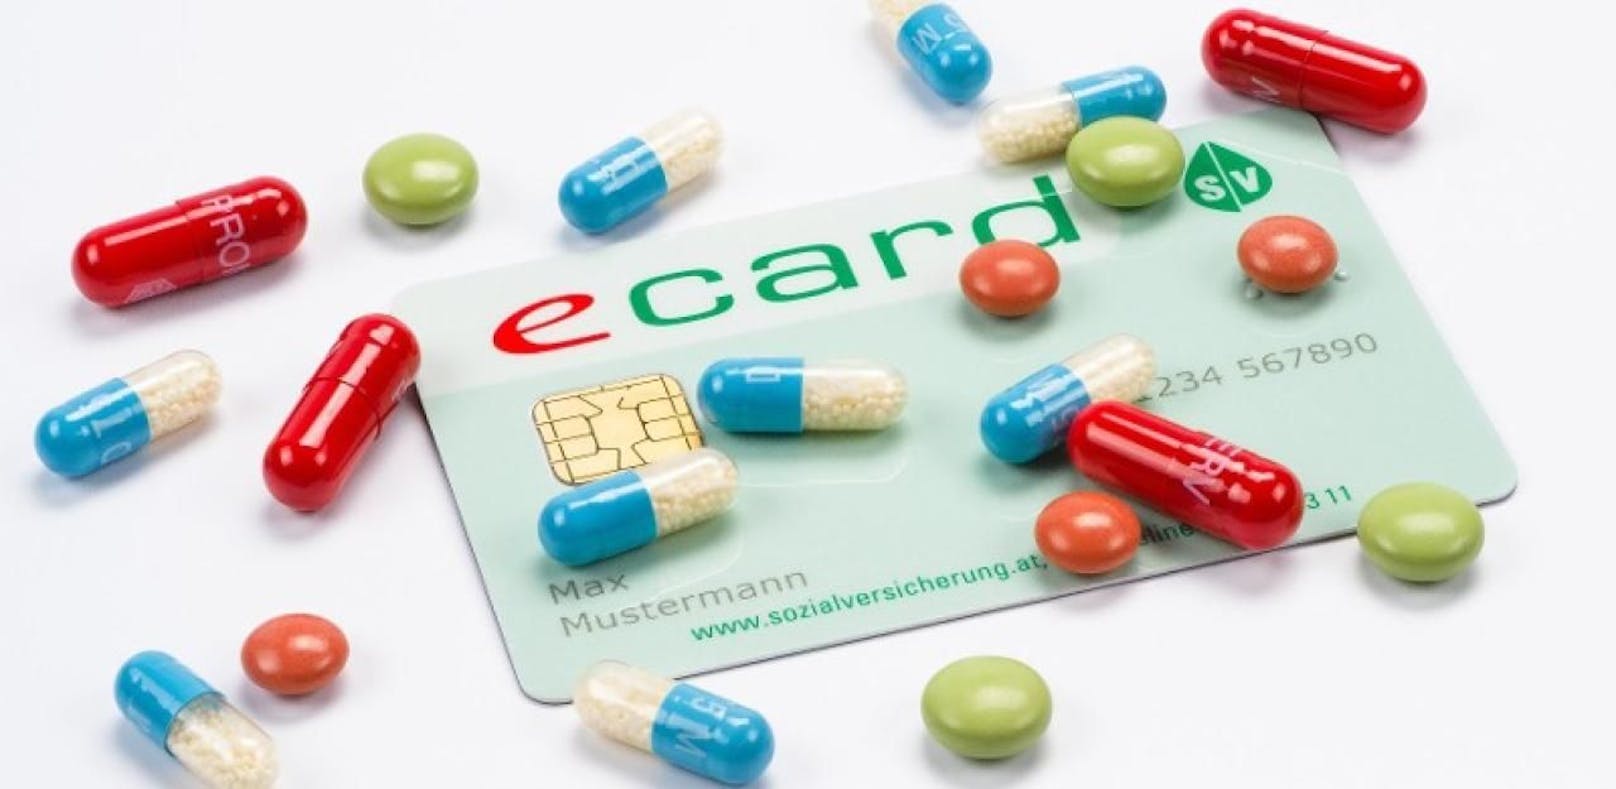 Bis 2019 landen alle Medikamente auf e-Card